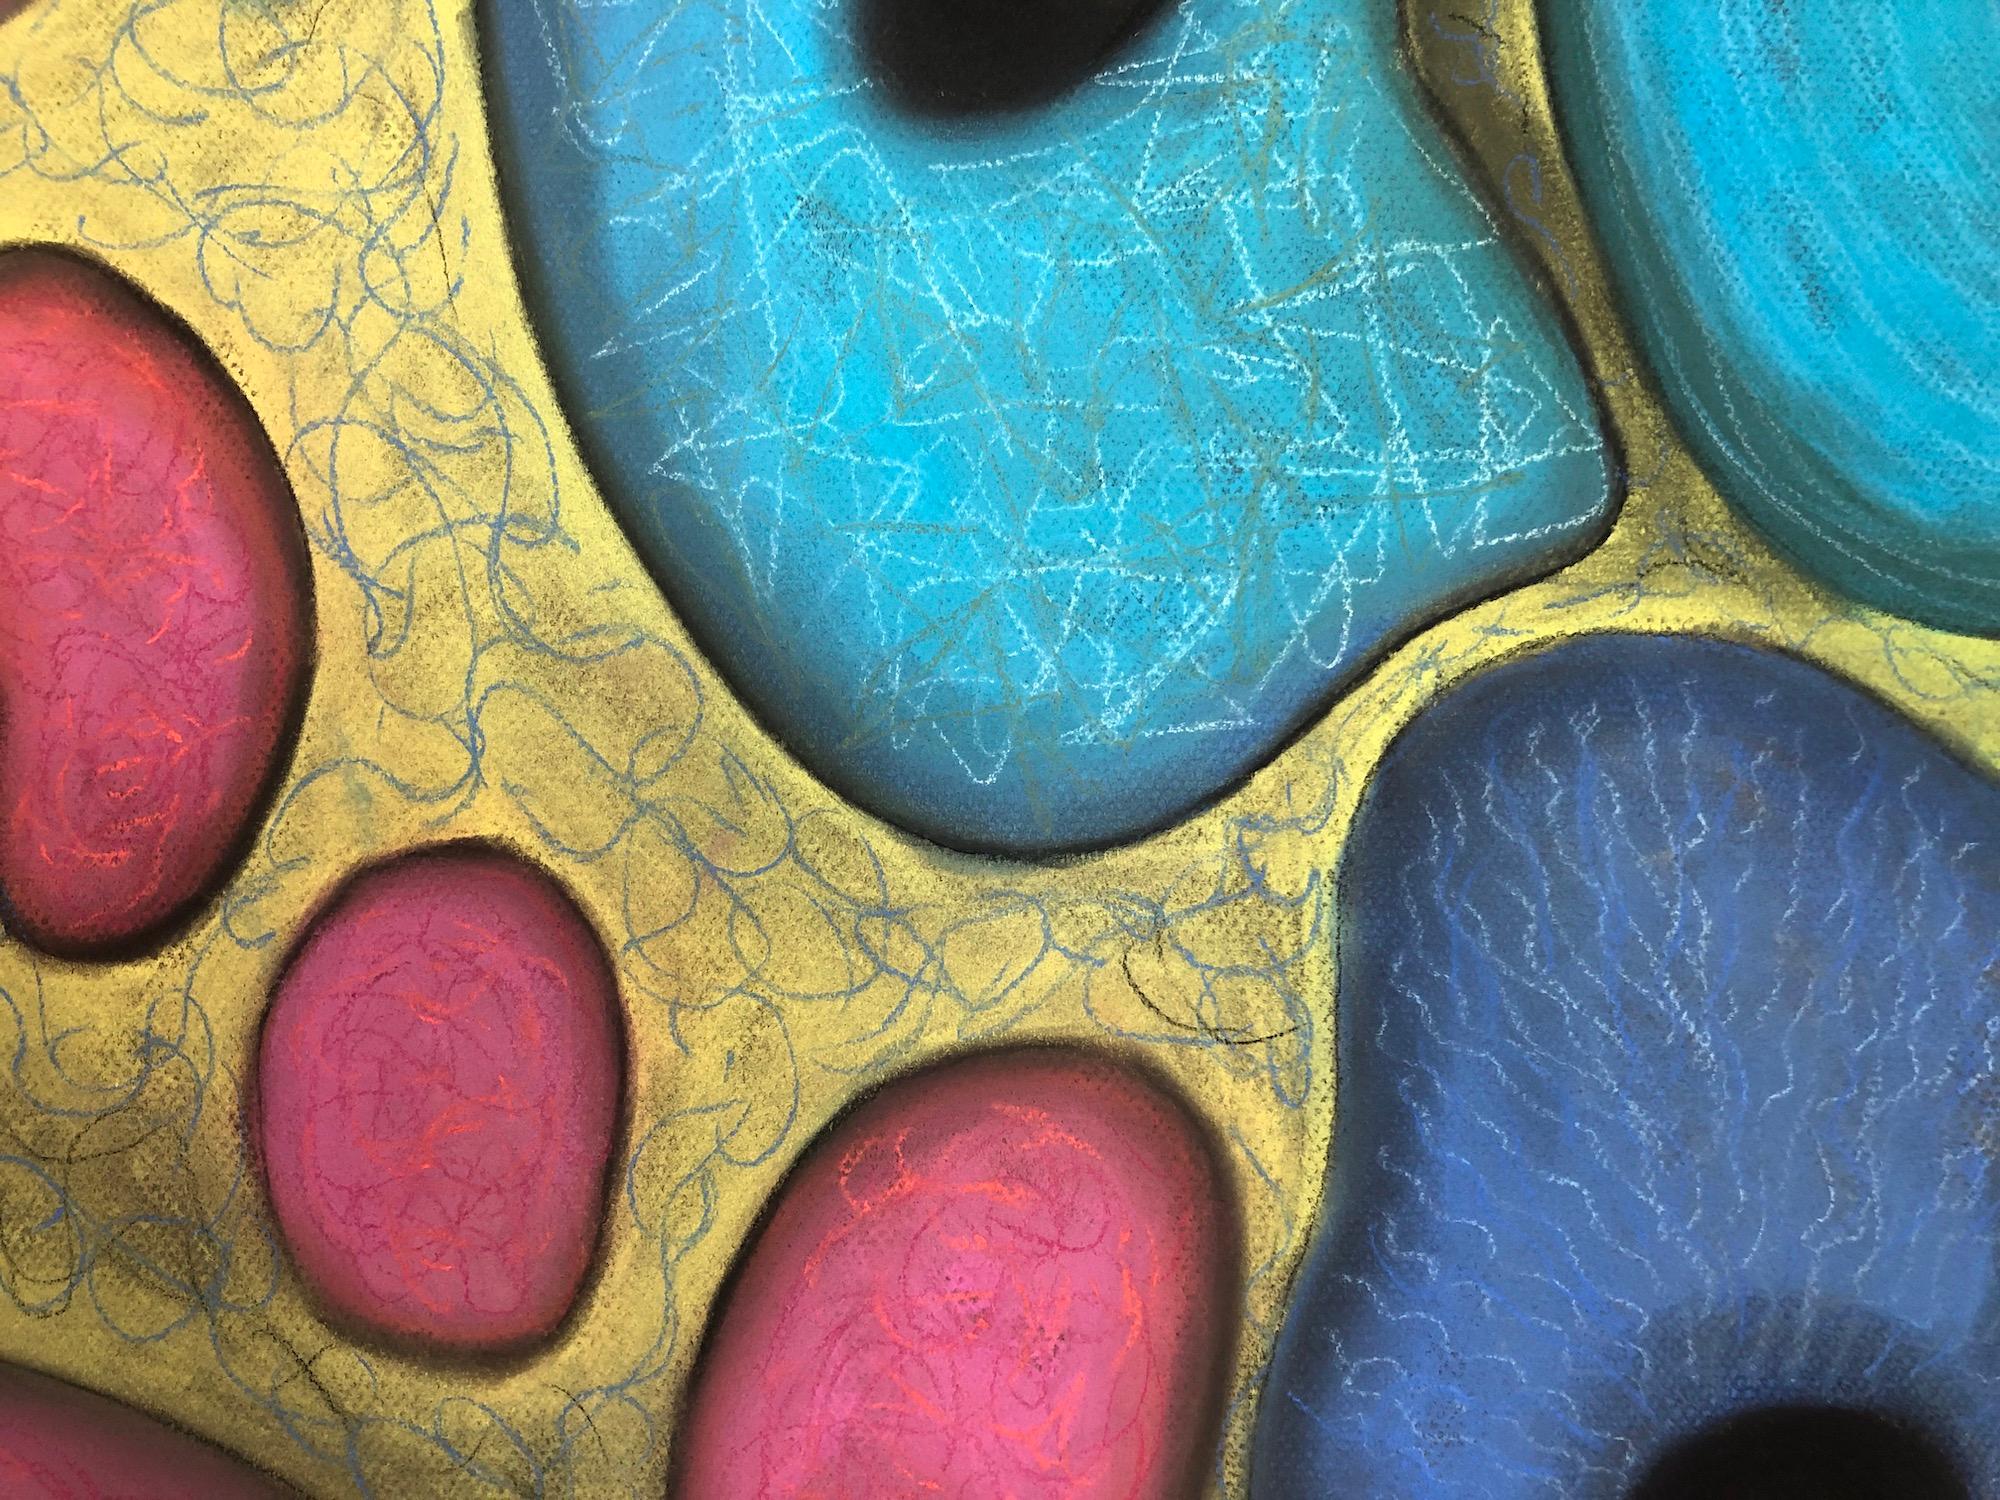 „Macrovision 6““, Pastell, mikroskopisch, Landschaft, Blau, Rosa, Gelb, Grün (Abstrakt), Painting, von Kay Hartung